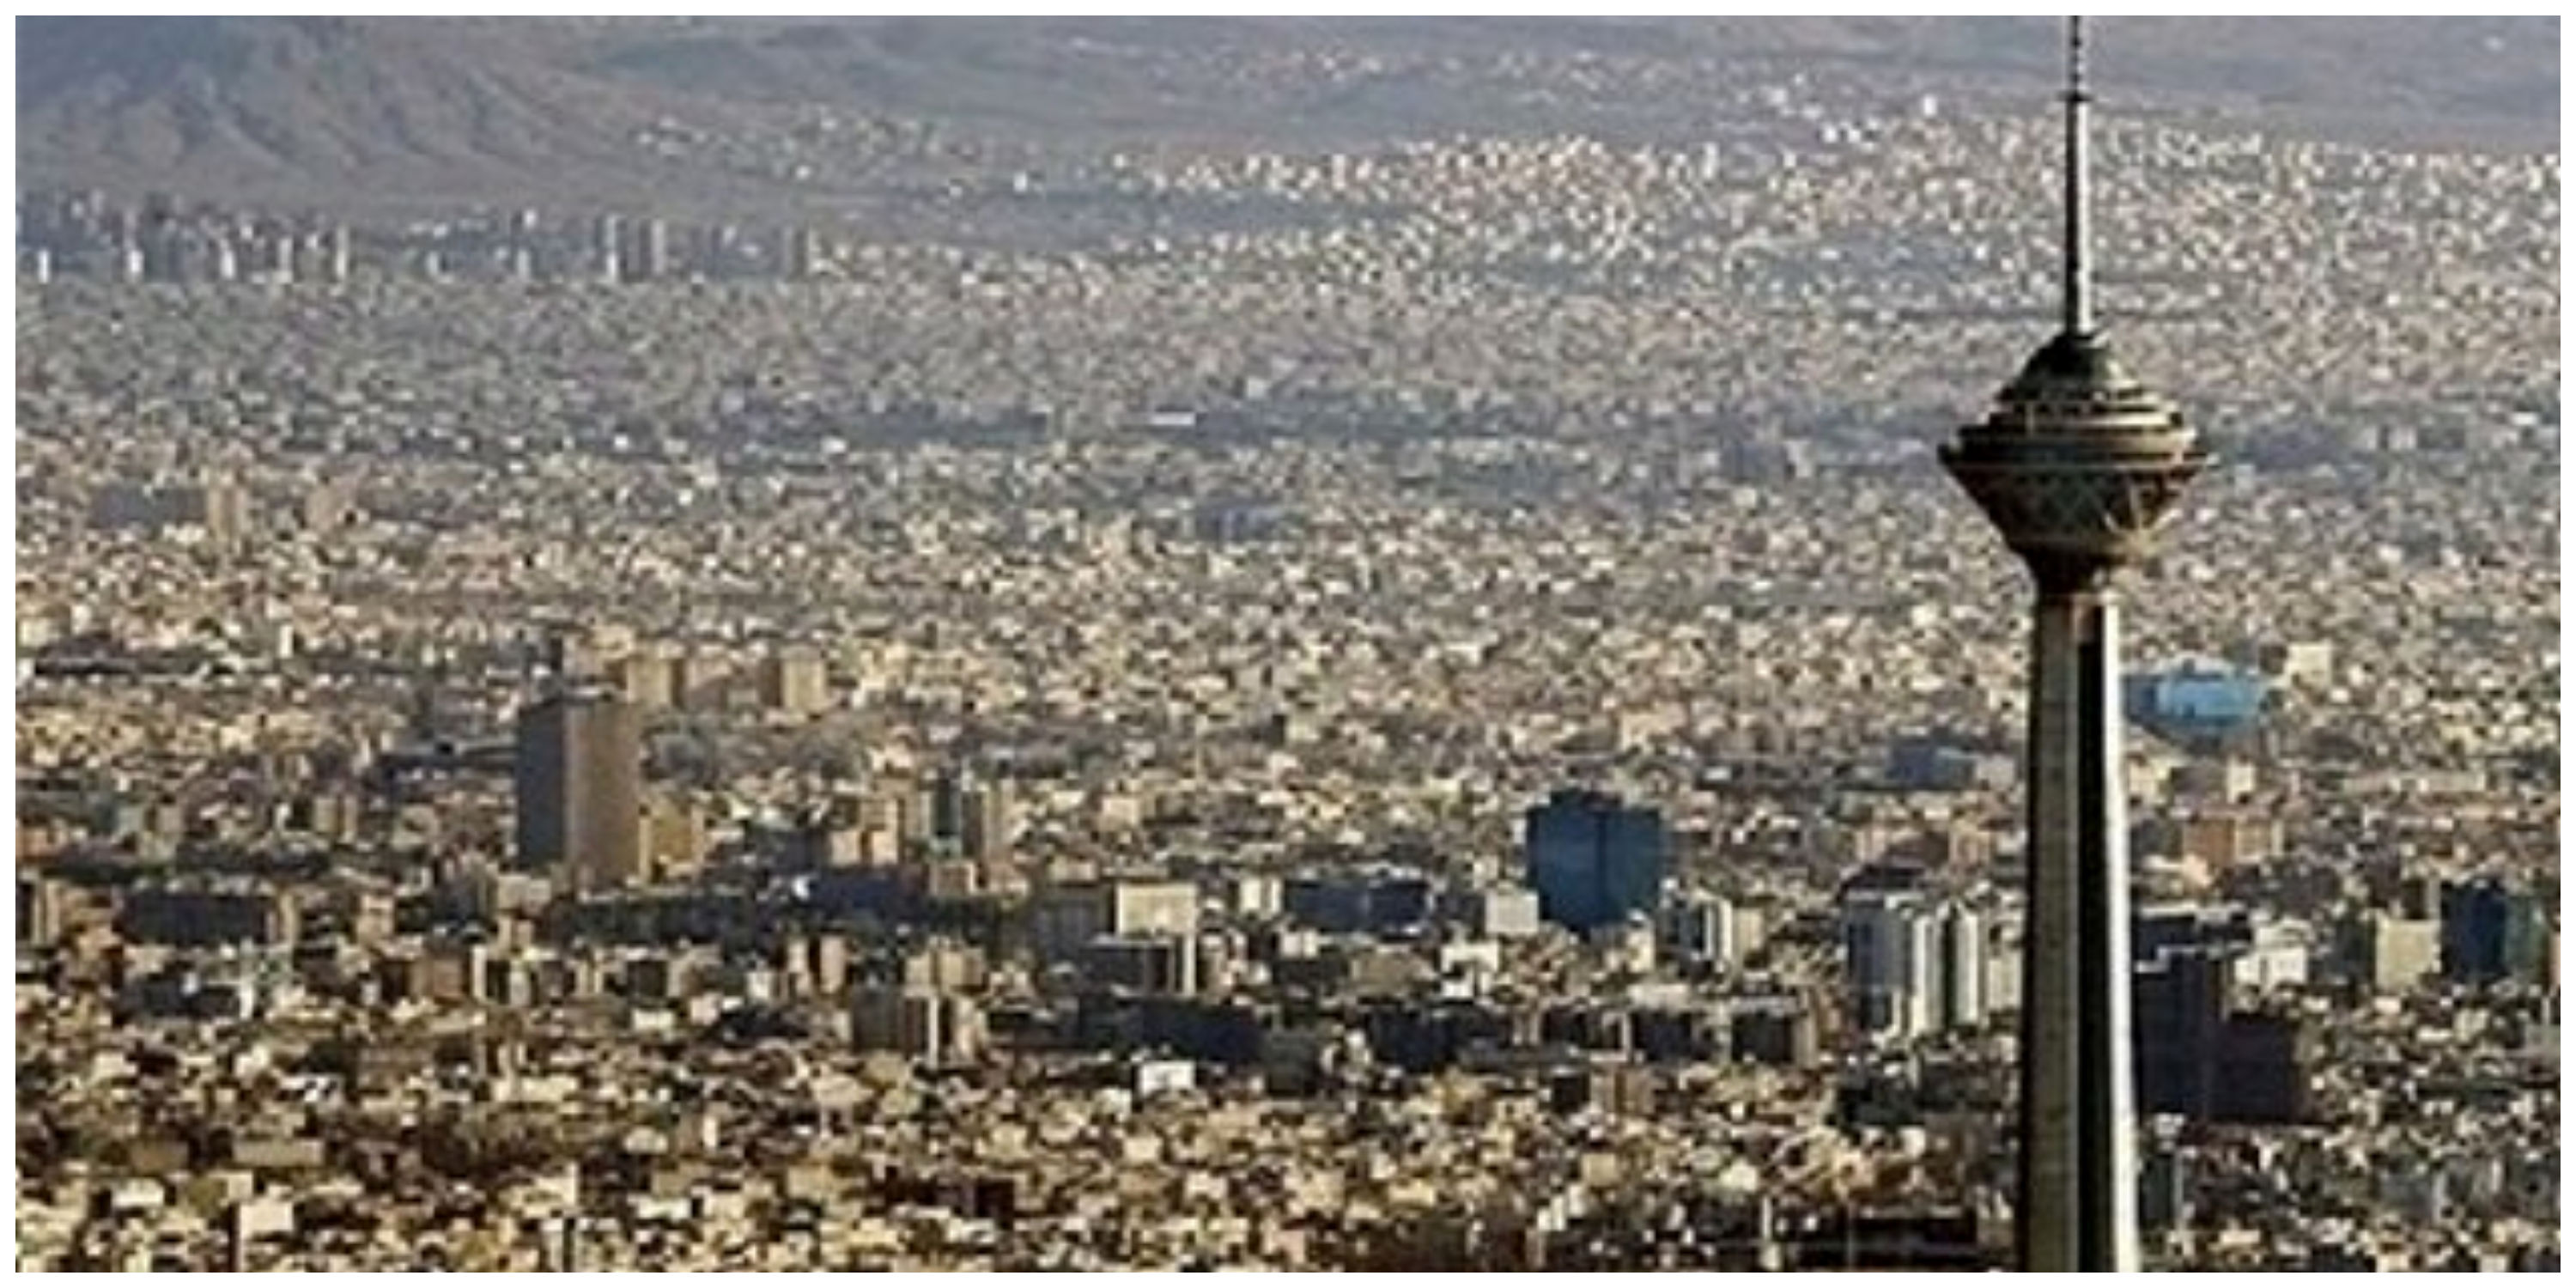  وضعیت قیمت مسکن در گرانترین منطقه پایتخت